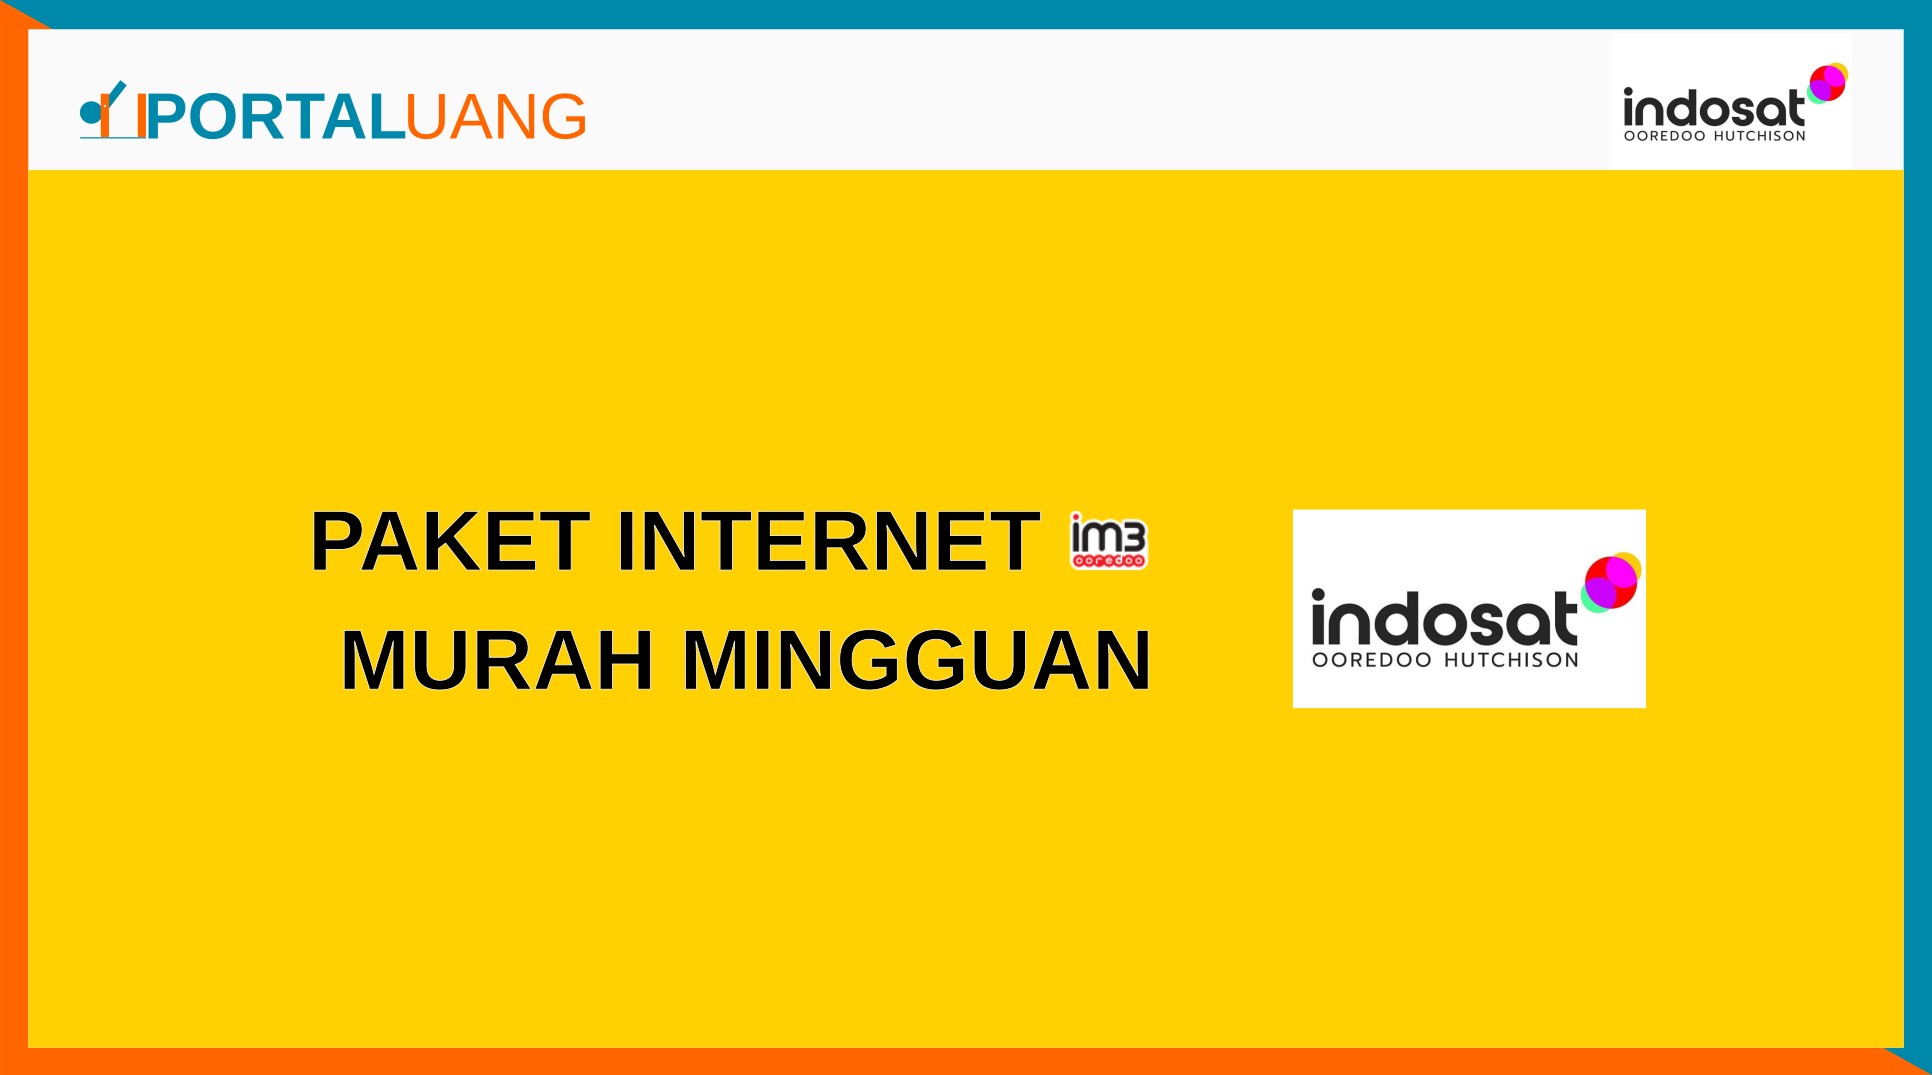 Paket Internet Indosat (IM3) Murah MIngguan